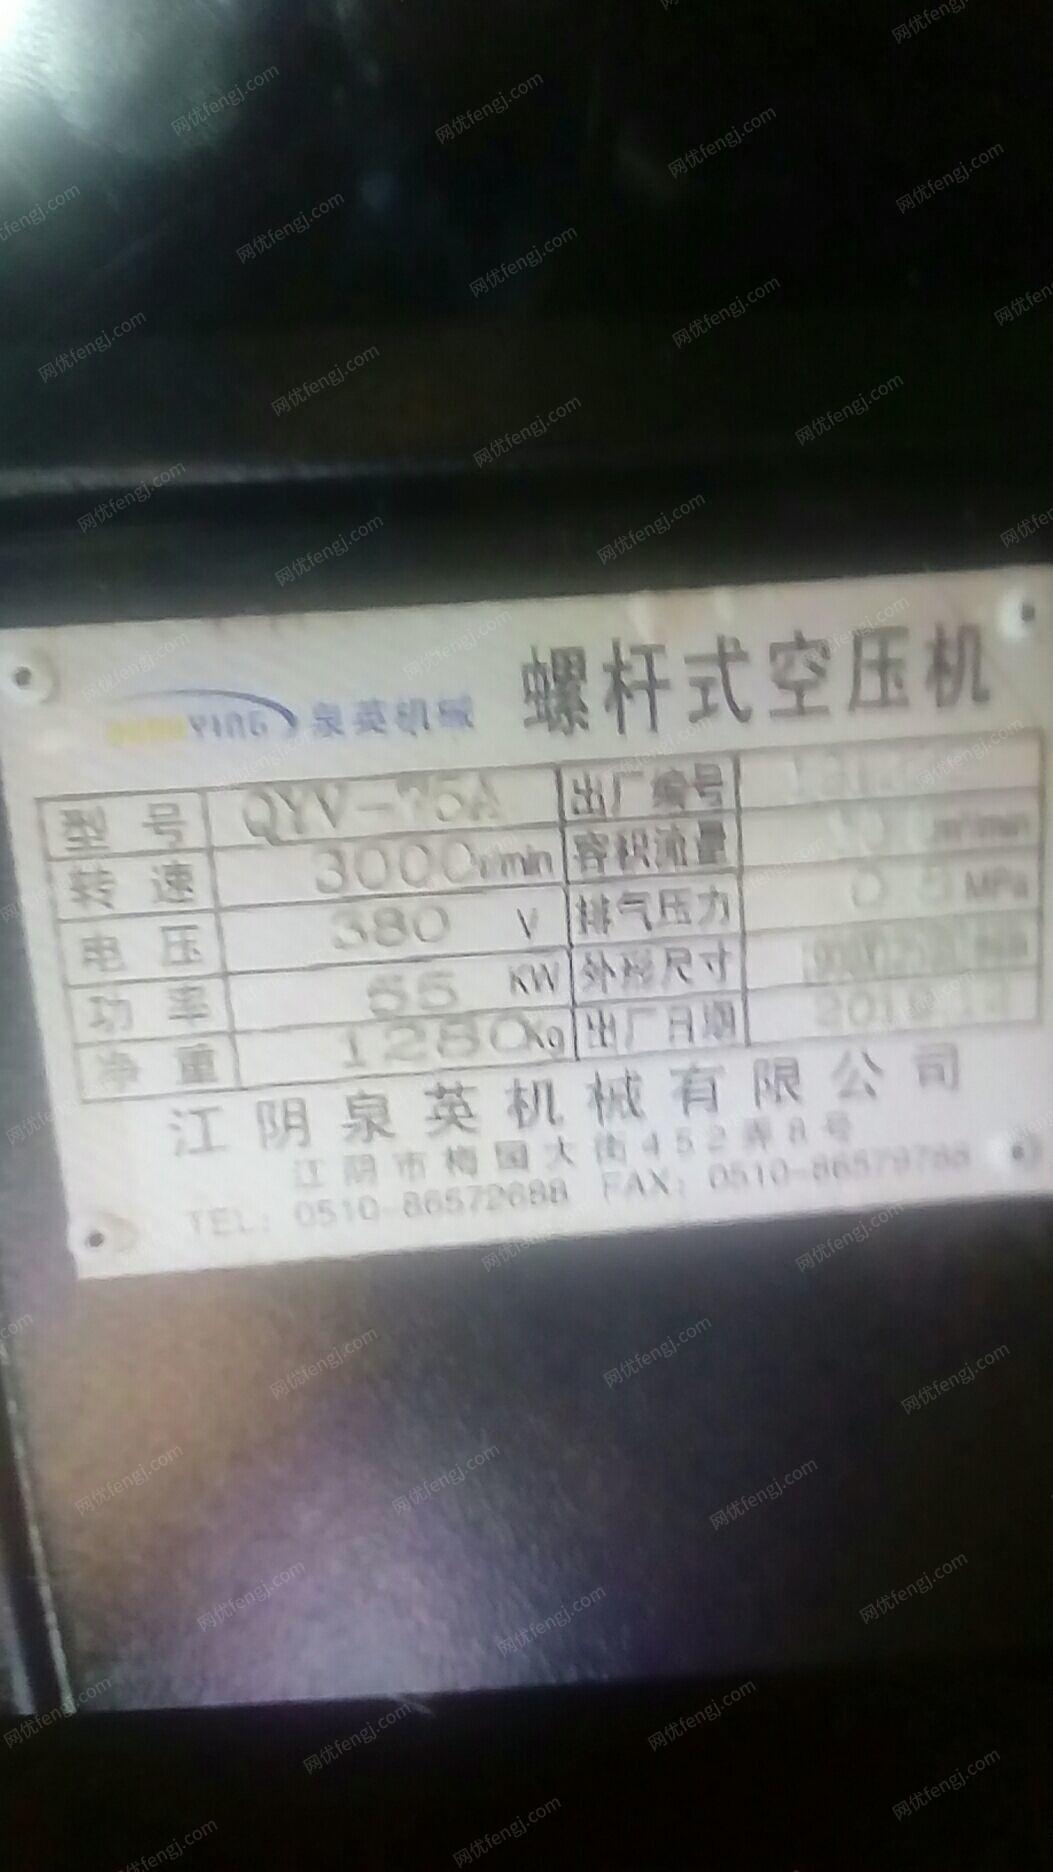 木业公司就近处理江阴55kw螺杆空压机.询价